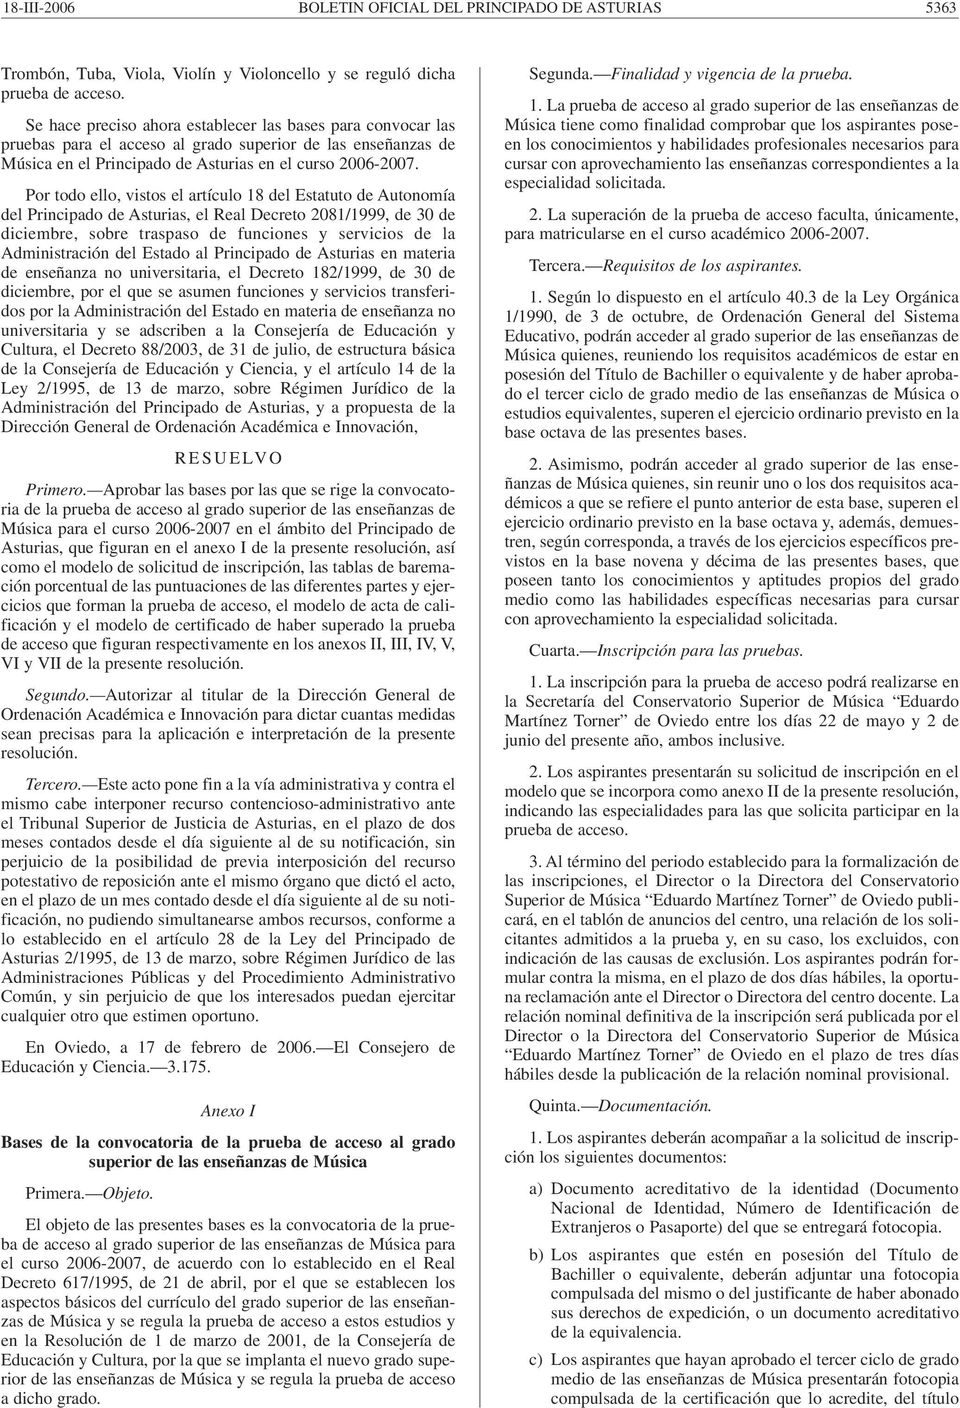 Por todo ello, vistos el artículo 18 del Estatuto de Autonomía del Principado de Asturias, el Real Decreto 2081/1999, de 30 de diciembre, sobre traspaso de funciones y servicios de la Administración